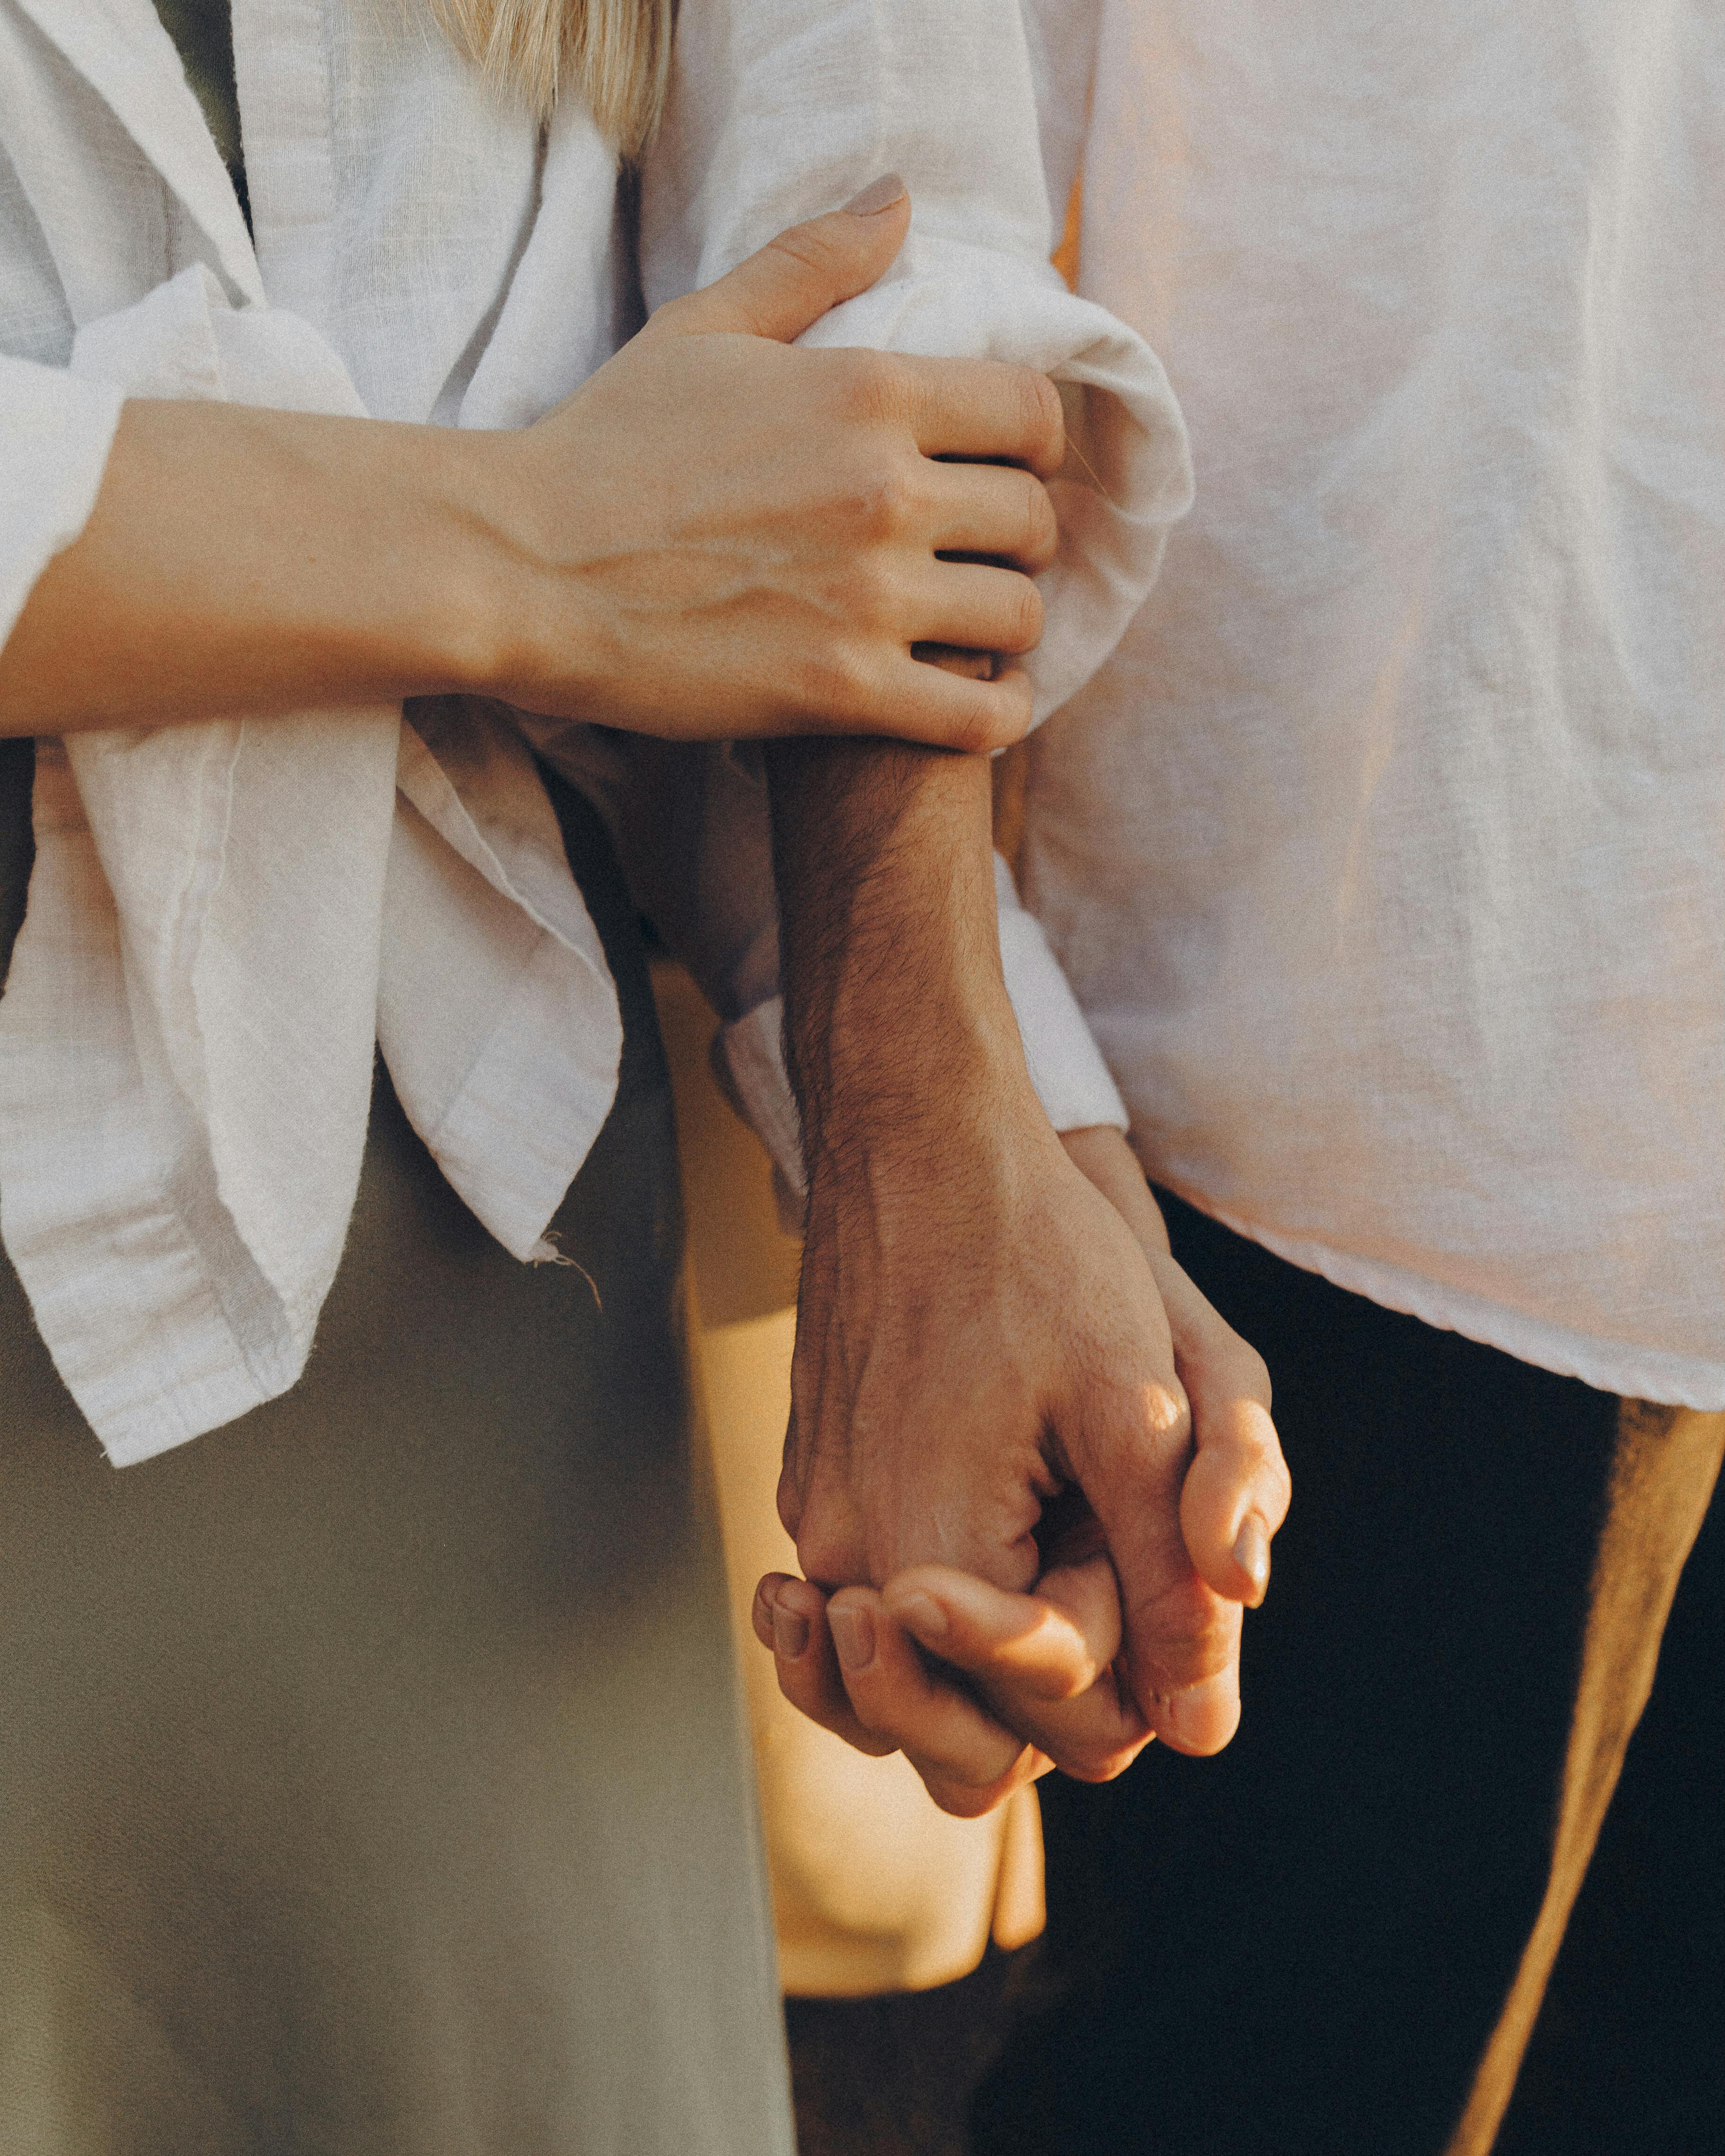 Eine Frau streichelt den Arm eines Mannes, während sie die Hände hält | Quelle: Pexels